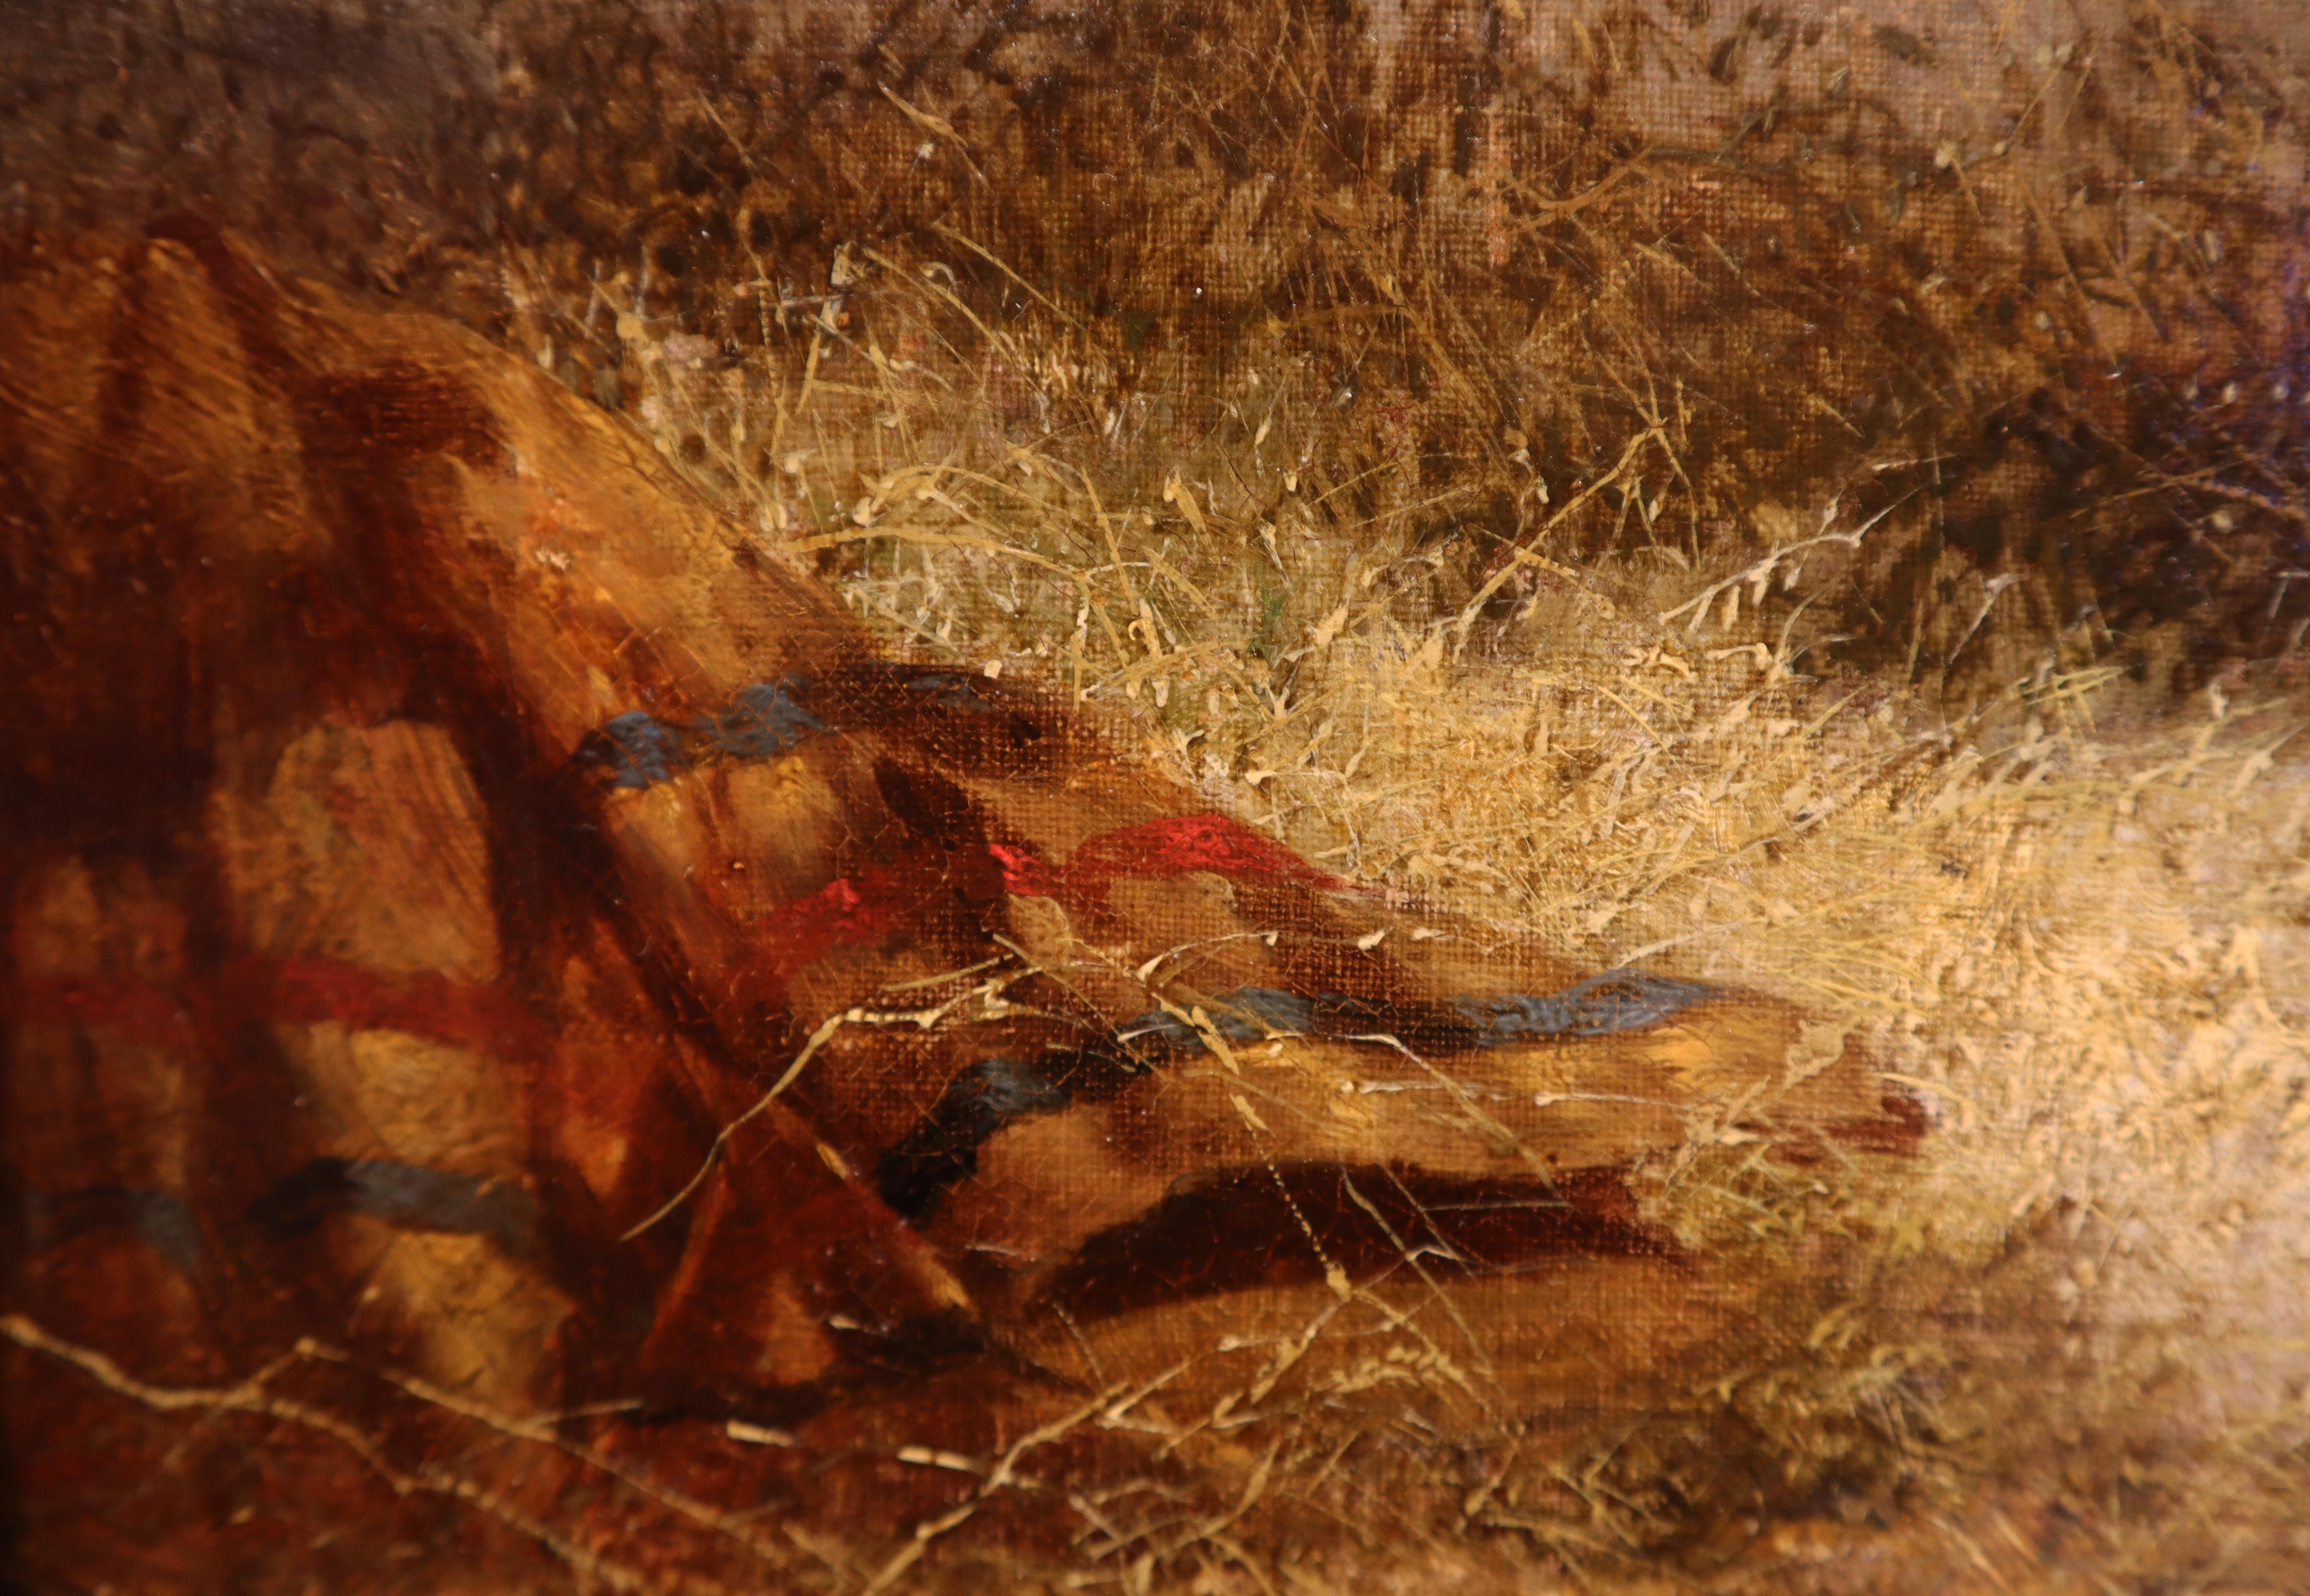 Bloomsbury, Winner of the Derby Oil on canvas - Brown Animal Painting by John Frederick Herring Sr.